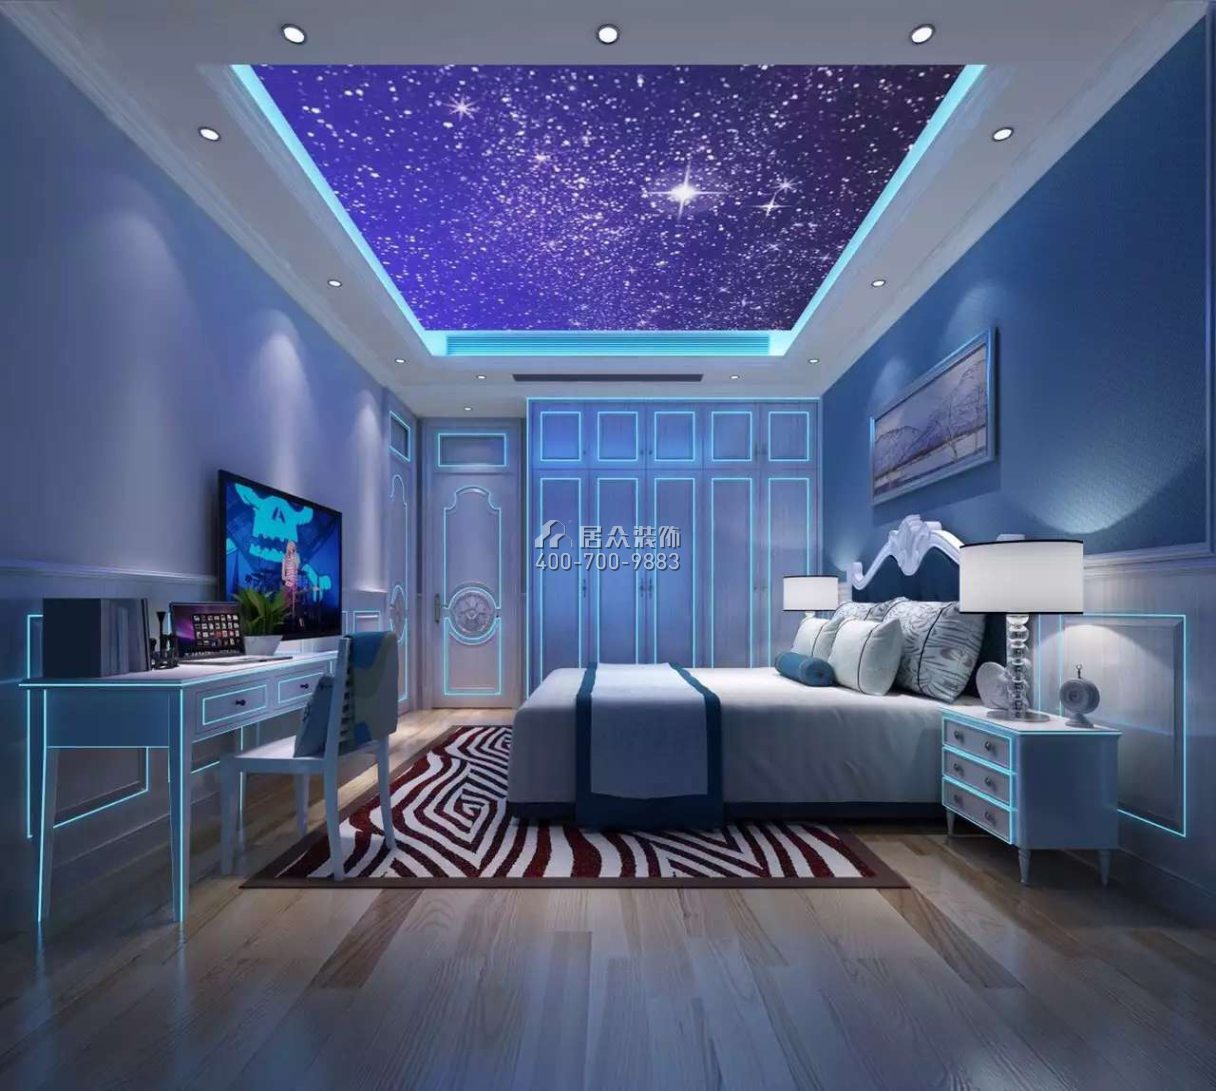 瓏御府220平方米美式風格平層戶型臥室裝修效果圖